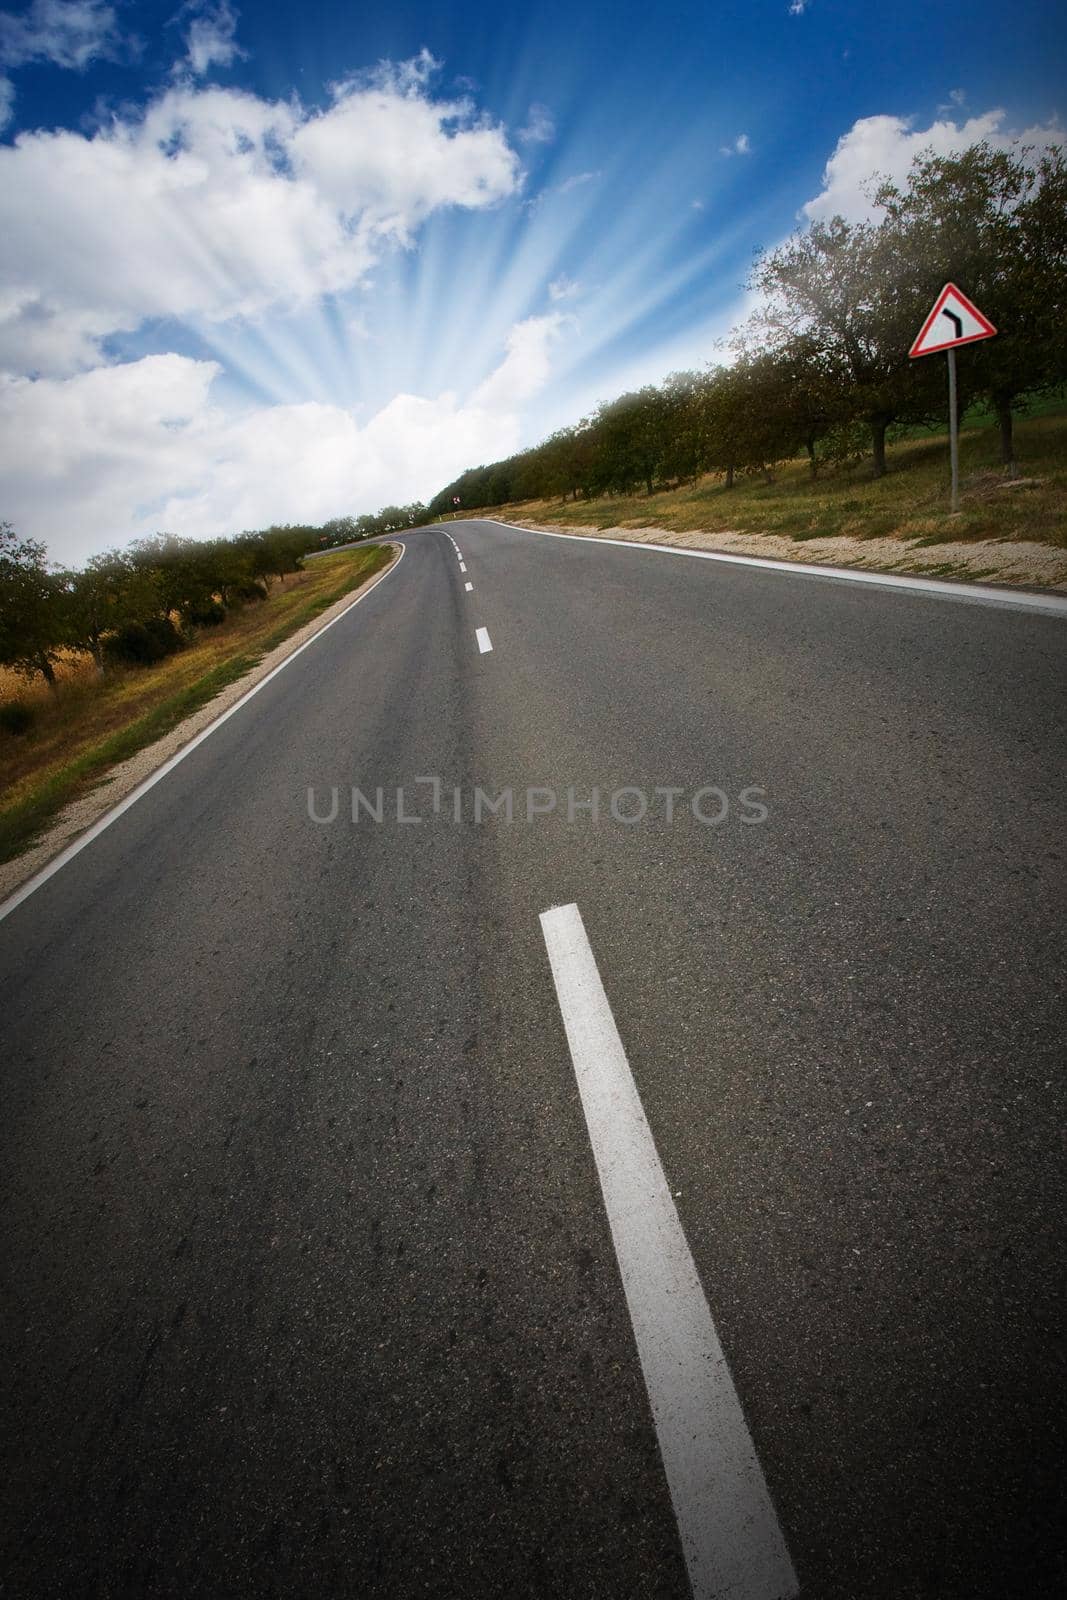 turn of the road by kornienko